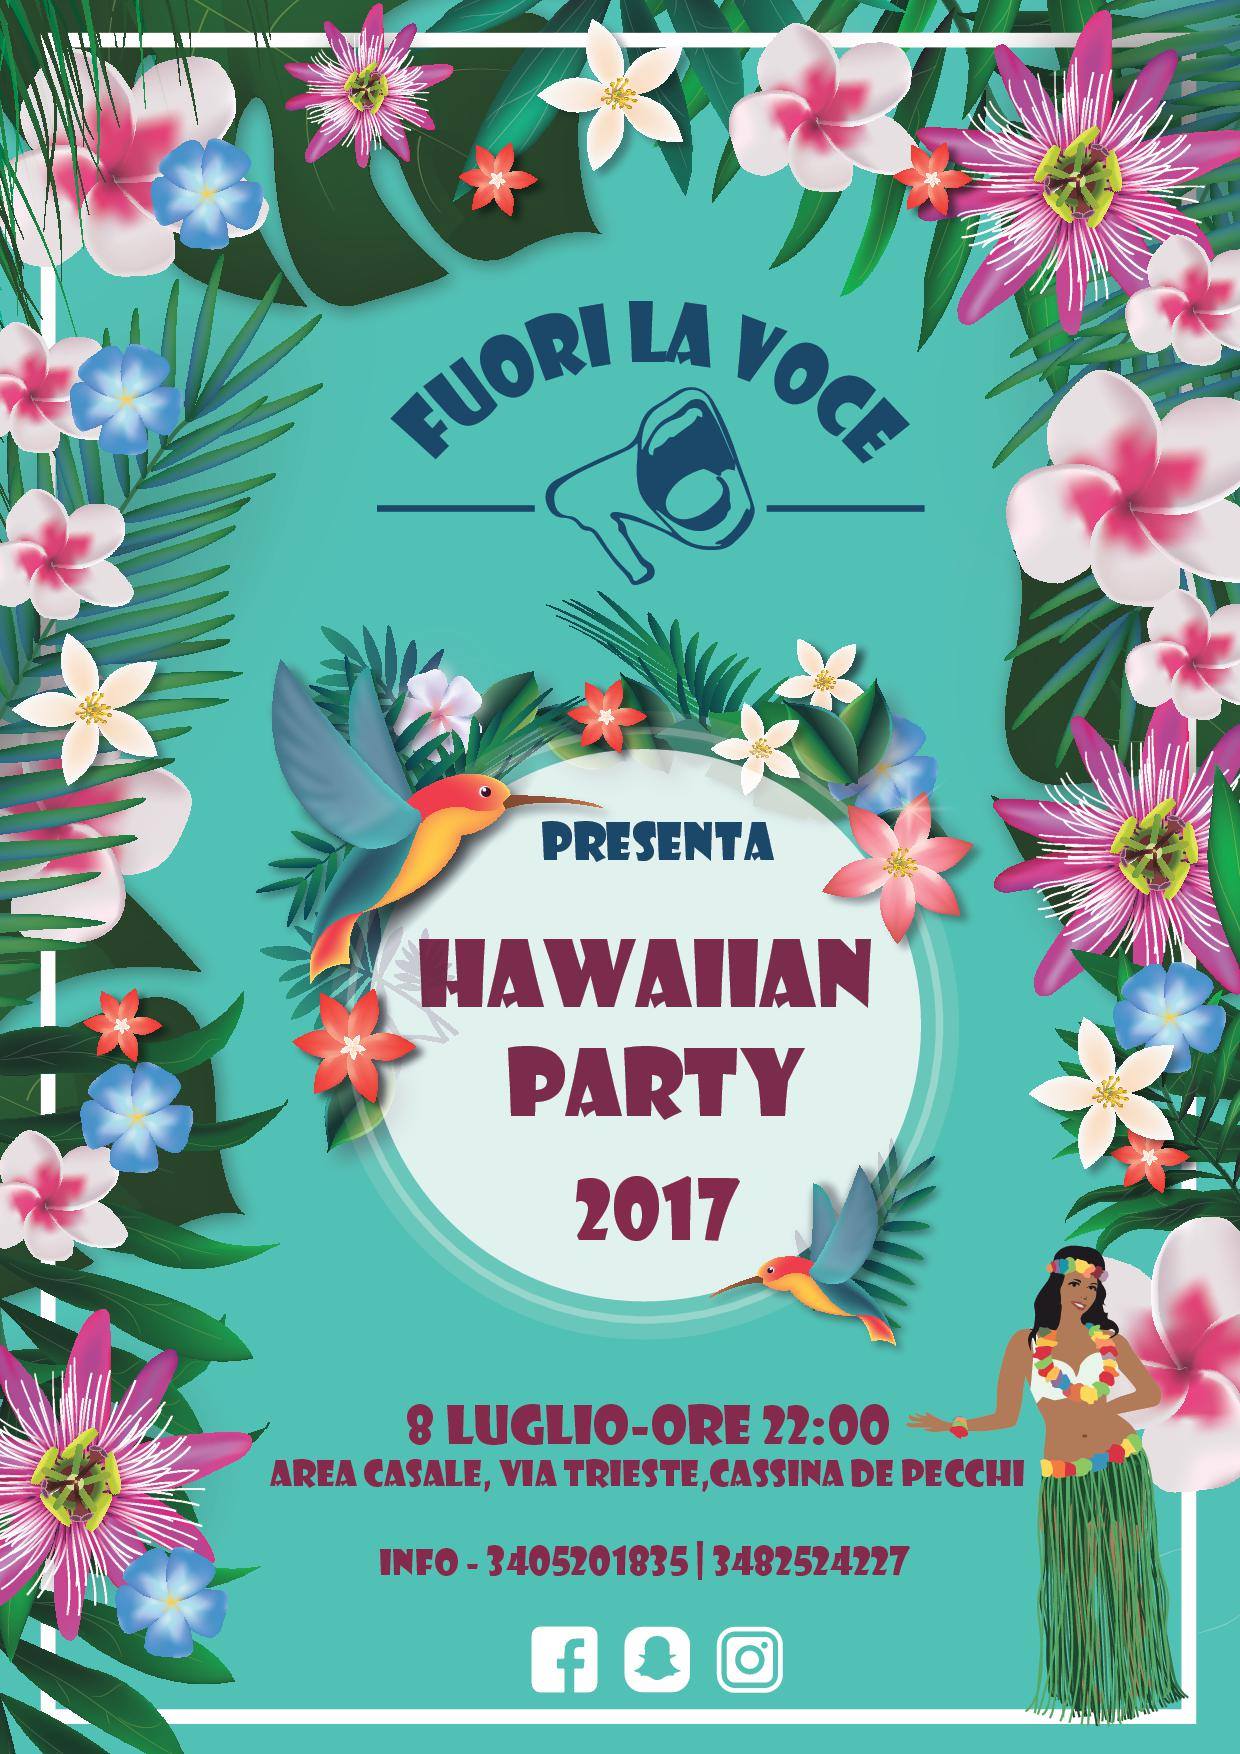 Hawaiian Party 2017 » Fuori la Voce